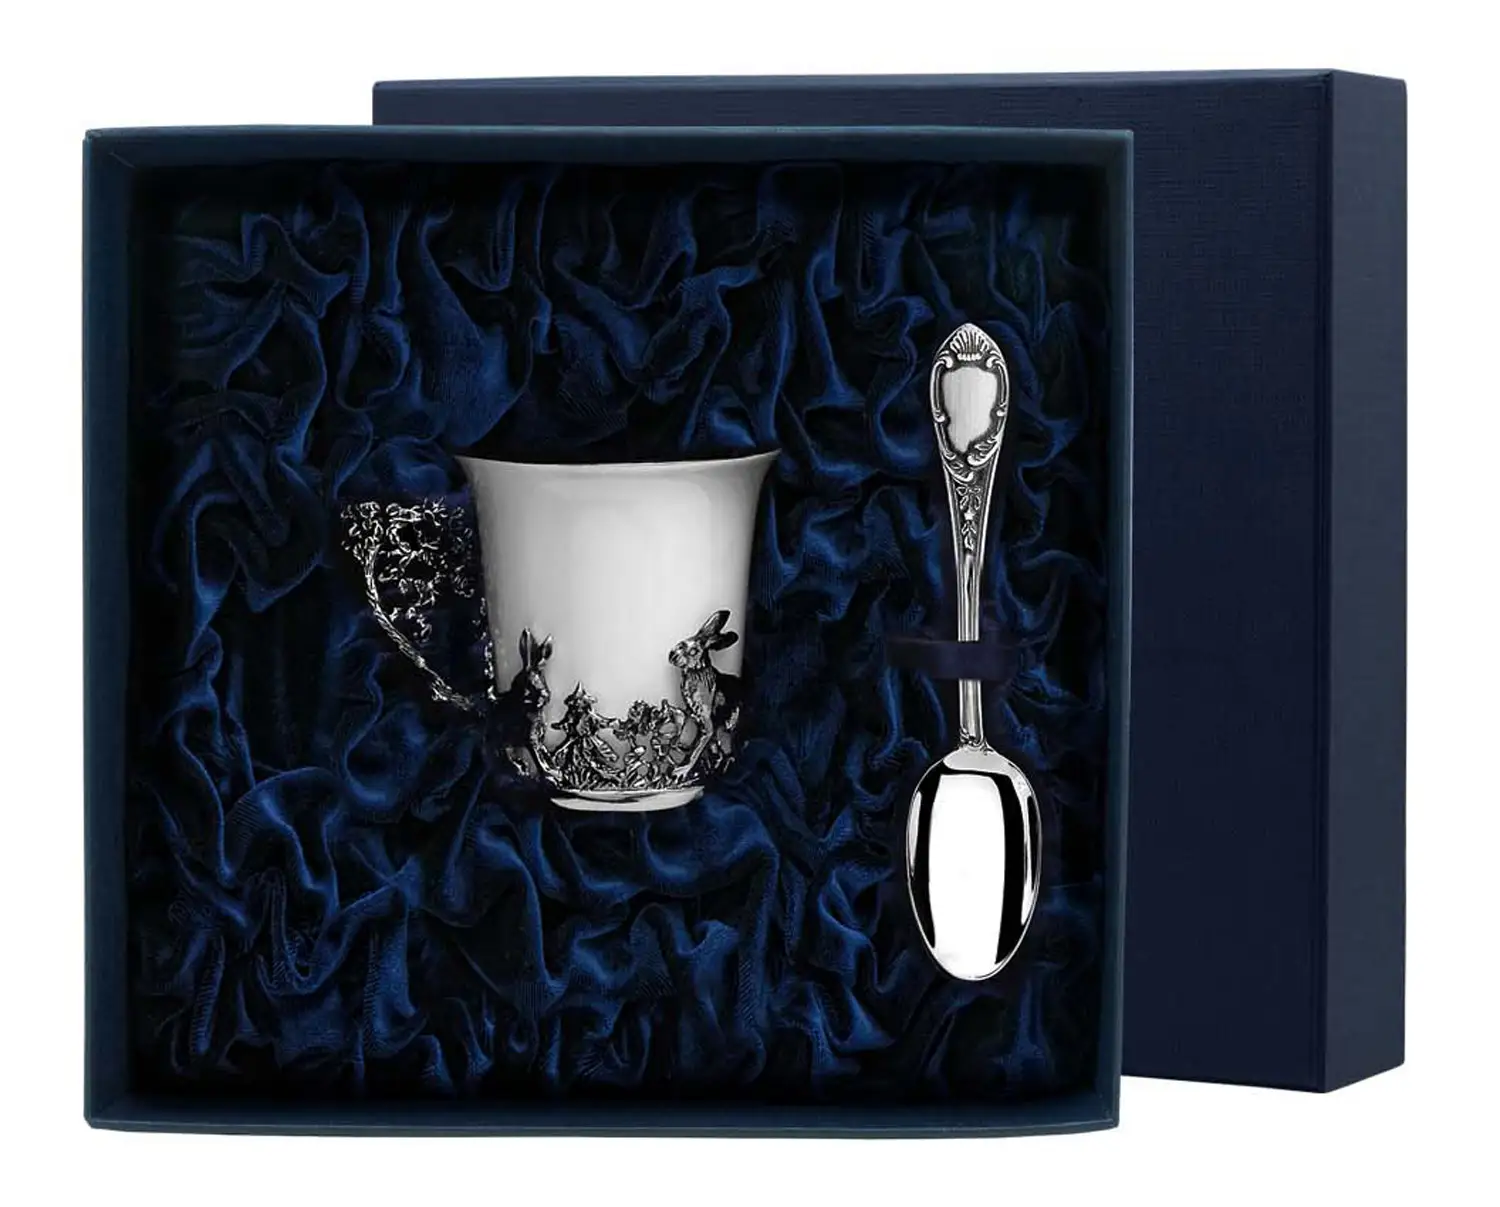 Набор кофейная чашка Зайцы: ложка, чашка (Серебро 925) набор чашка кофейная листопад ложка из серебра